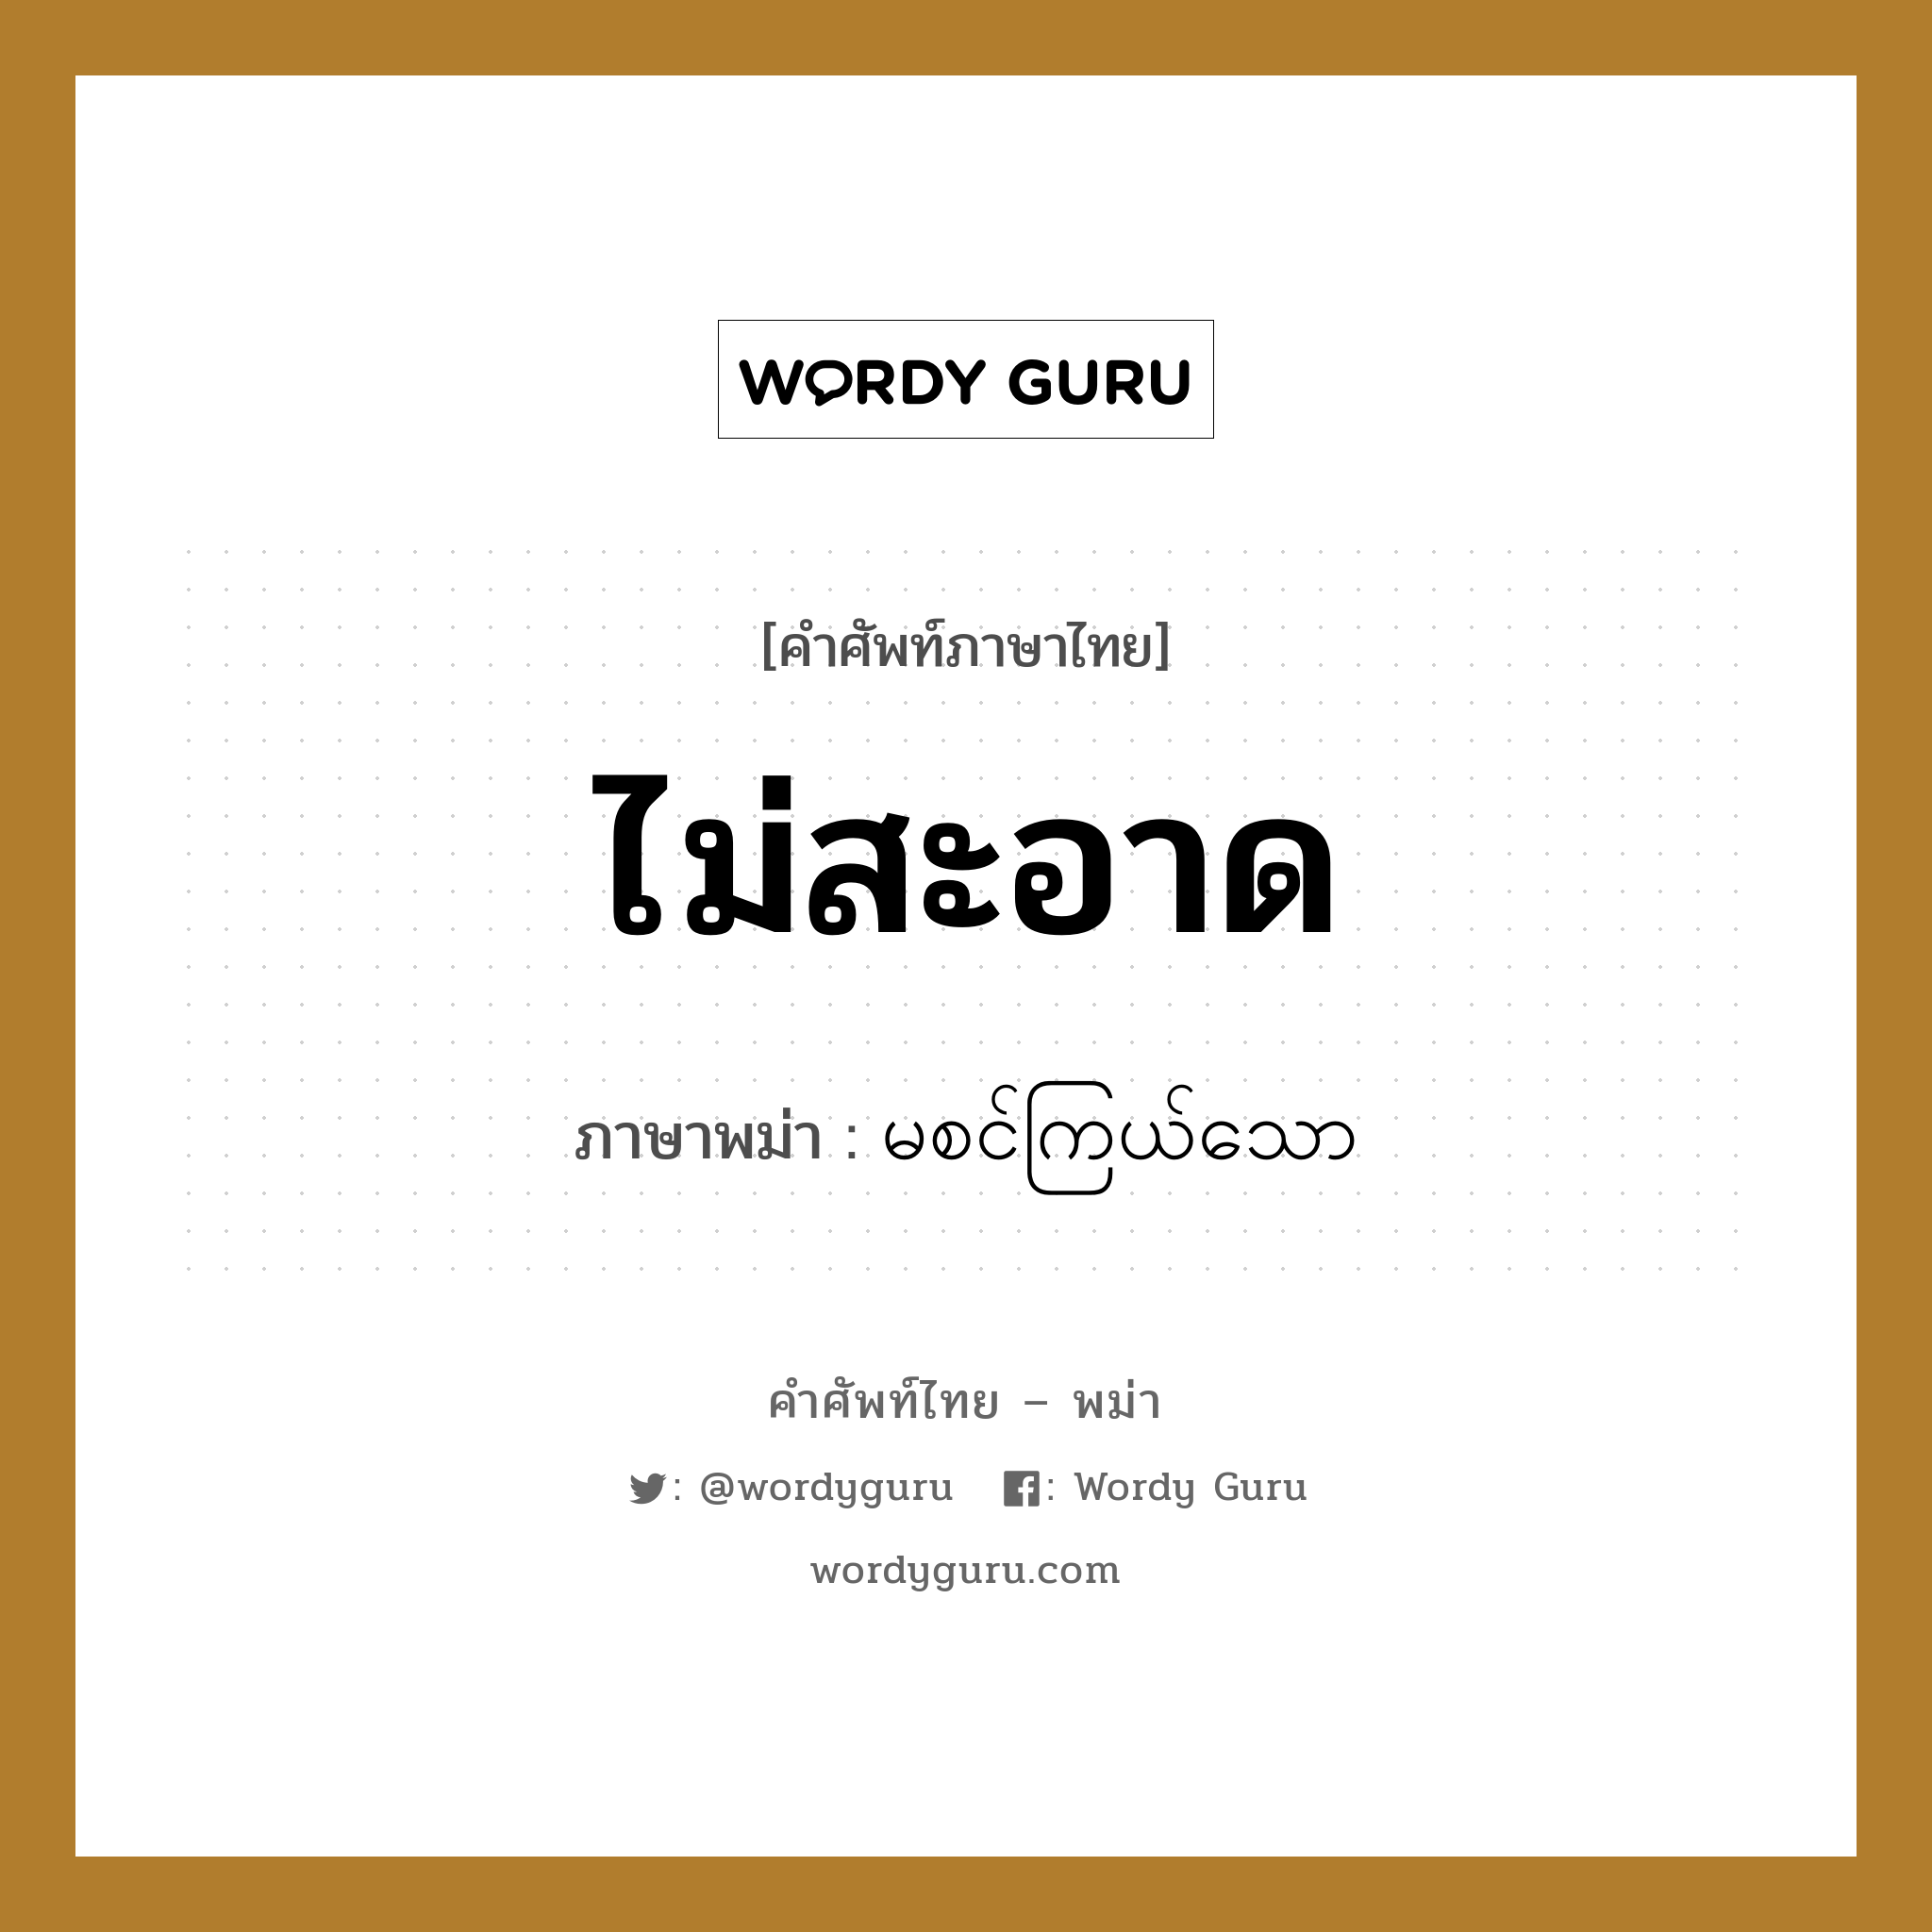 ไม่สะอาด ภาษาพม่าคืออะไร, คำศัพท์ภาษาไทย - พม่า ไม่สะอาด ภาษาพม่า မစင်ကြယ်သော